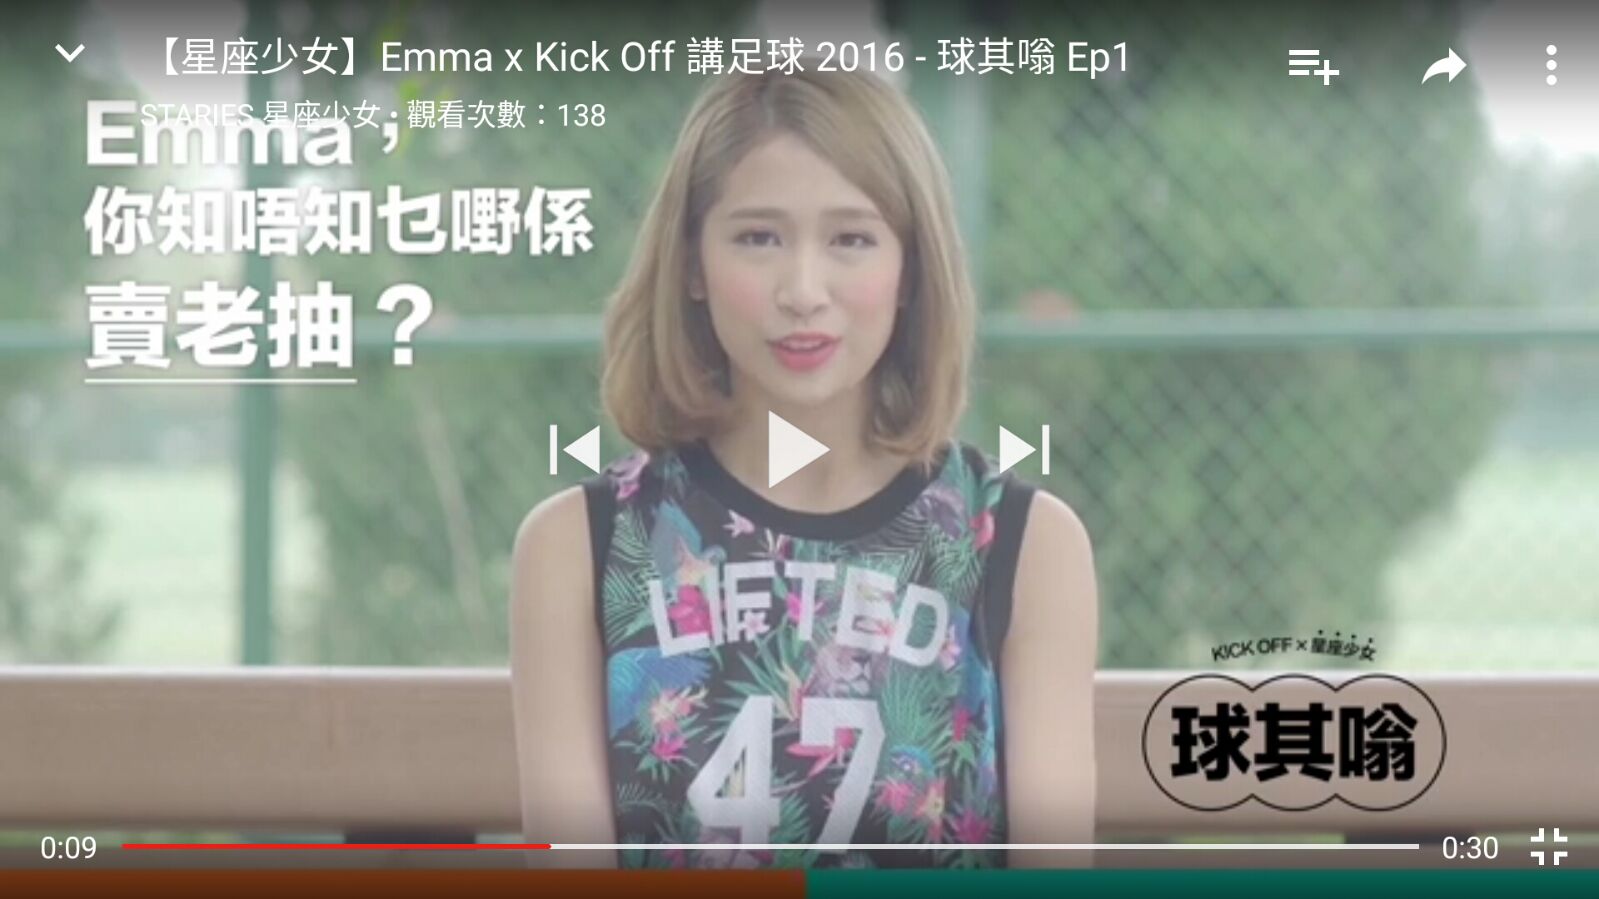 星座少女Staries 之演藝人紀錄: 	星座少女Staries -Emma x Kick Off 講足球 2016 - 球其嗡 Ep1 